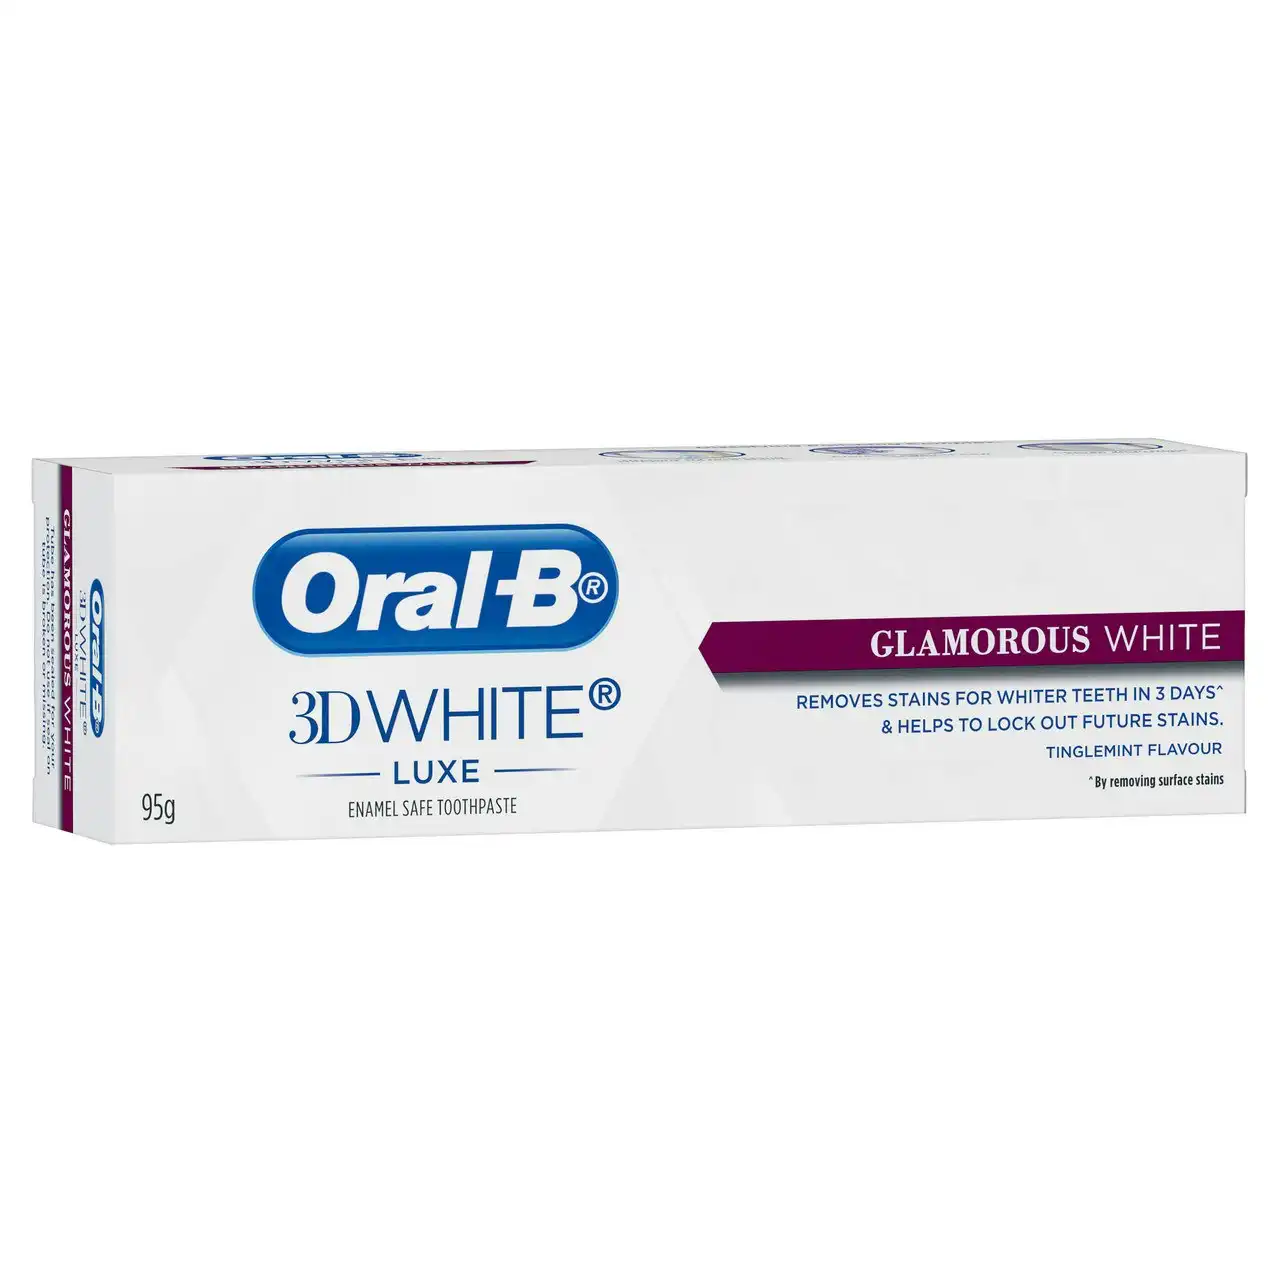 Oral-B 3D White Luxe Glamorous White Whitening Toothpaste 95g